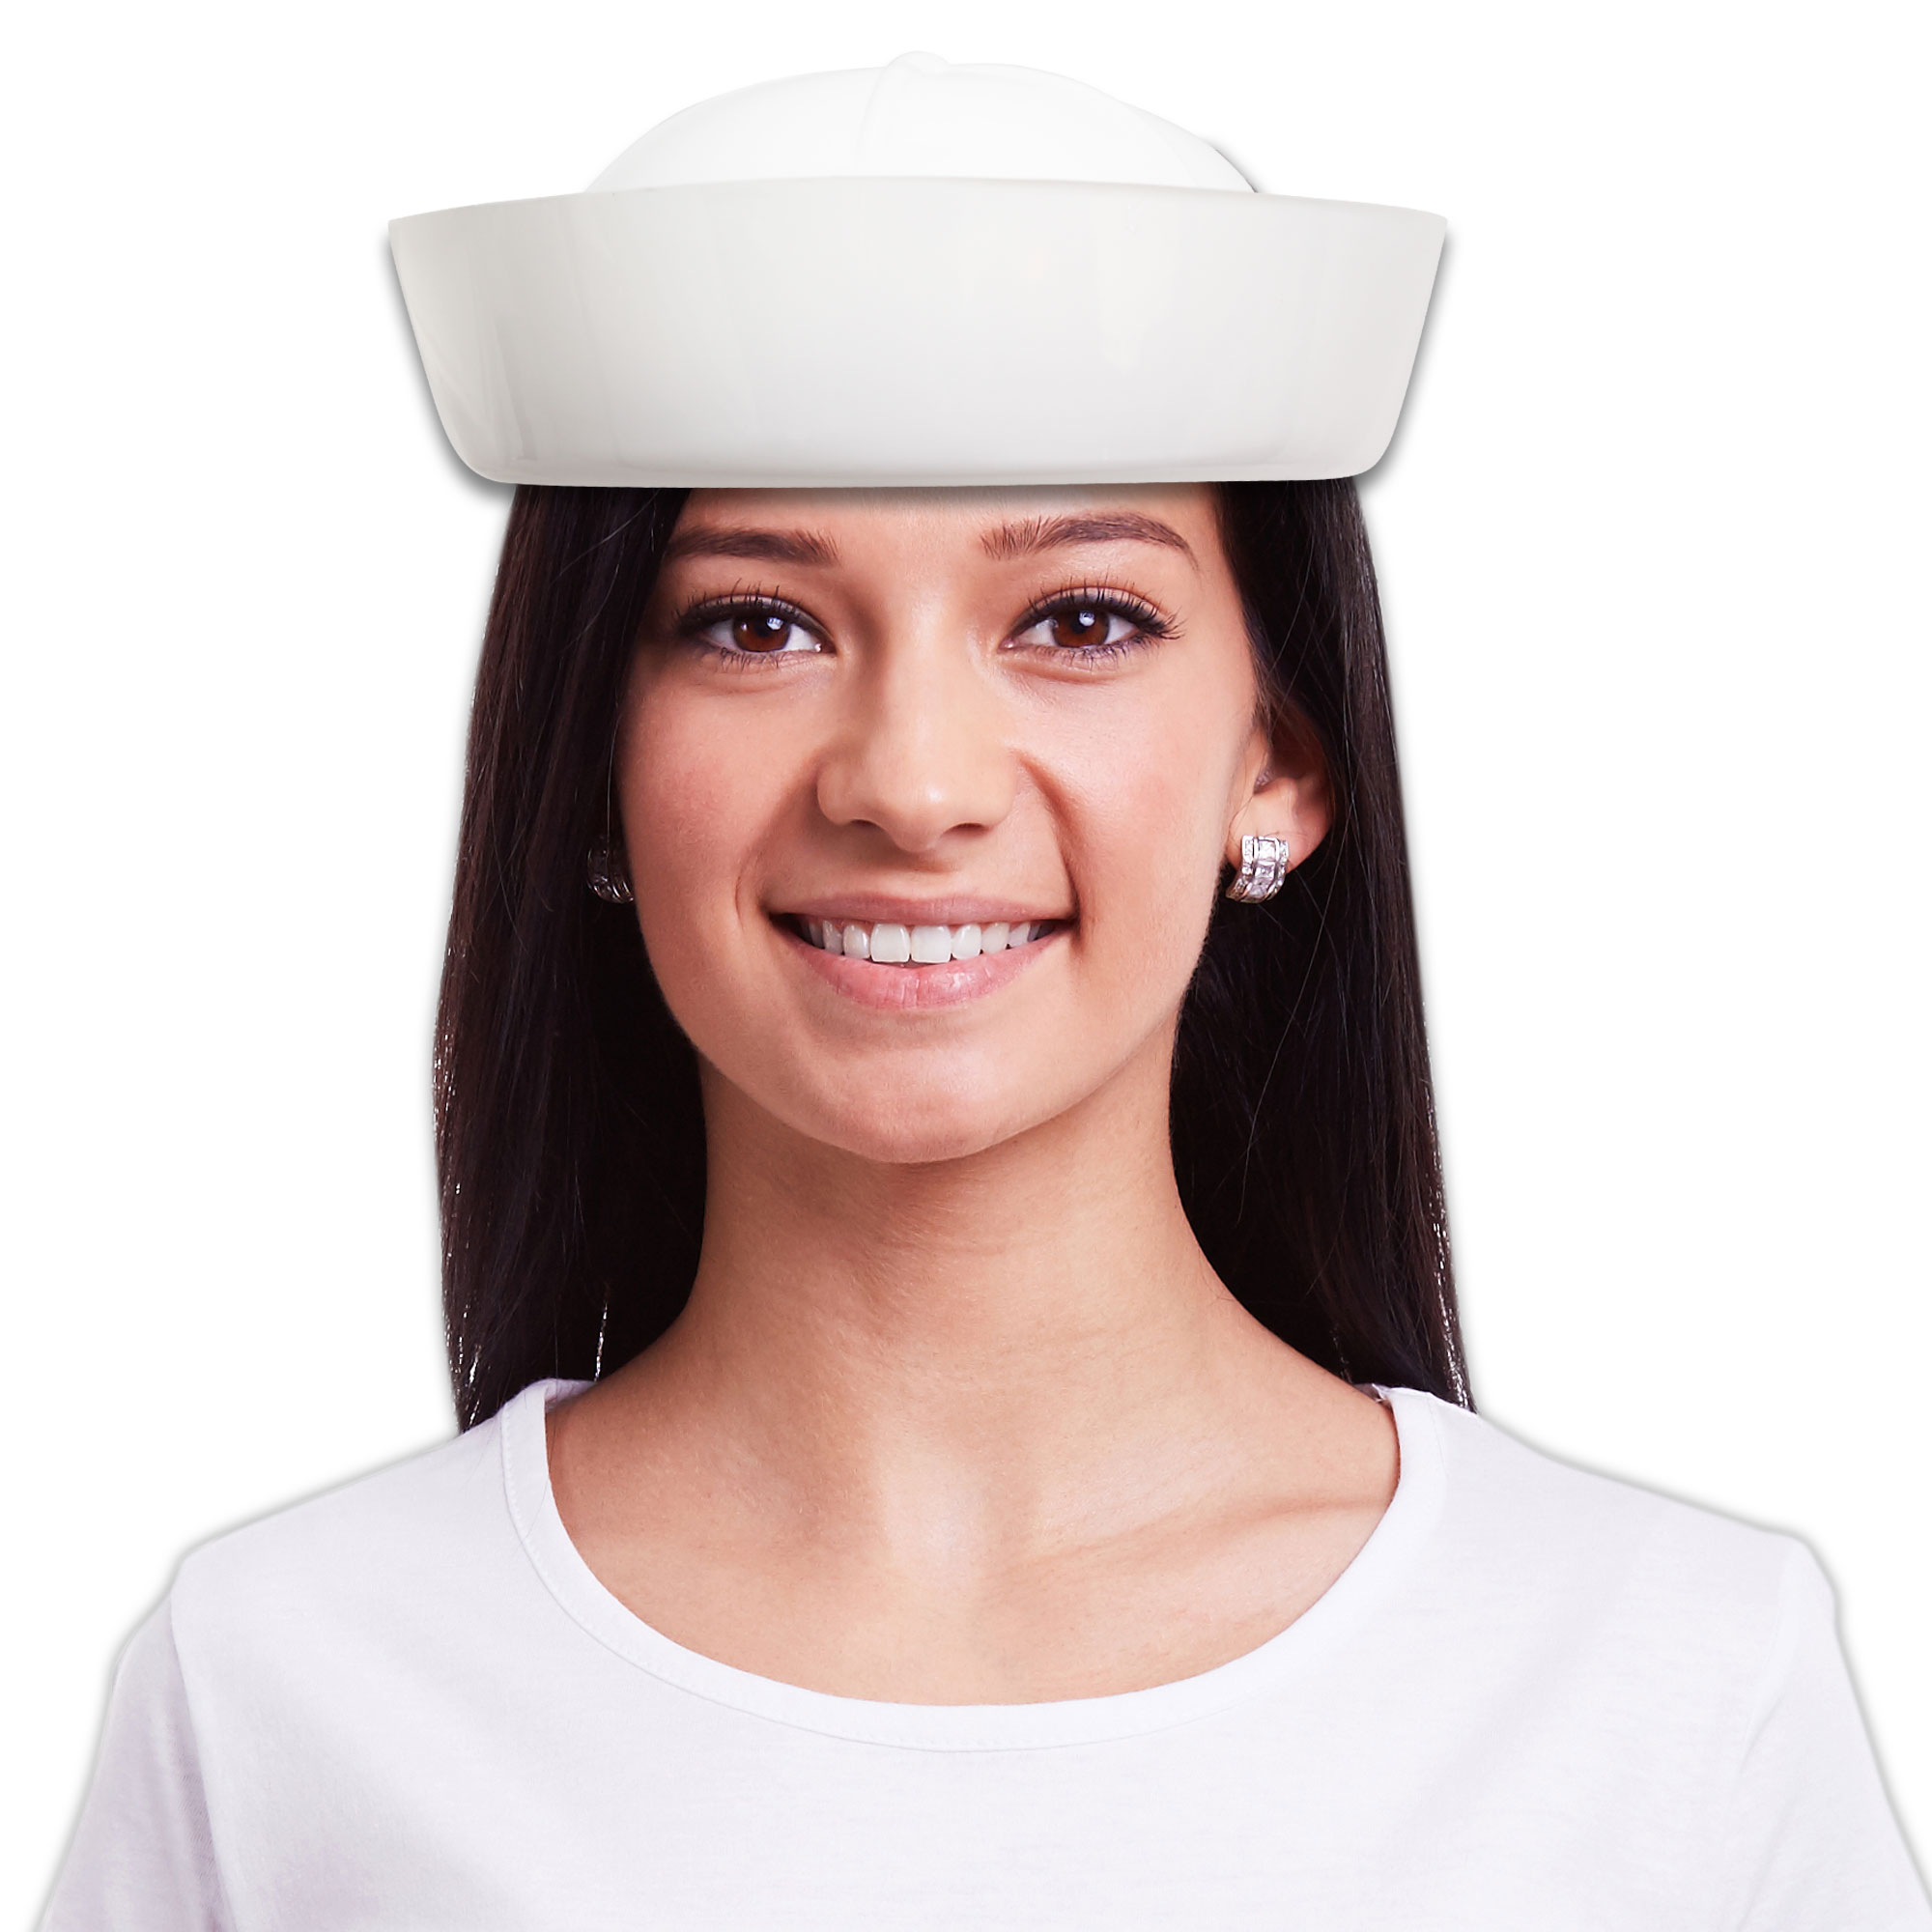 White Plastic Sailors Caps